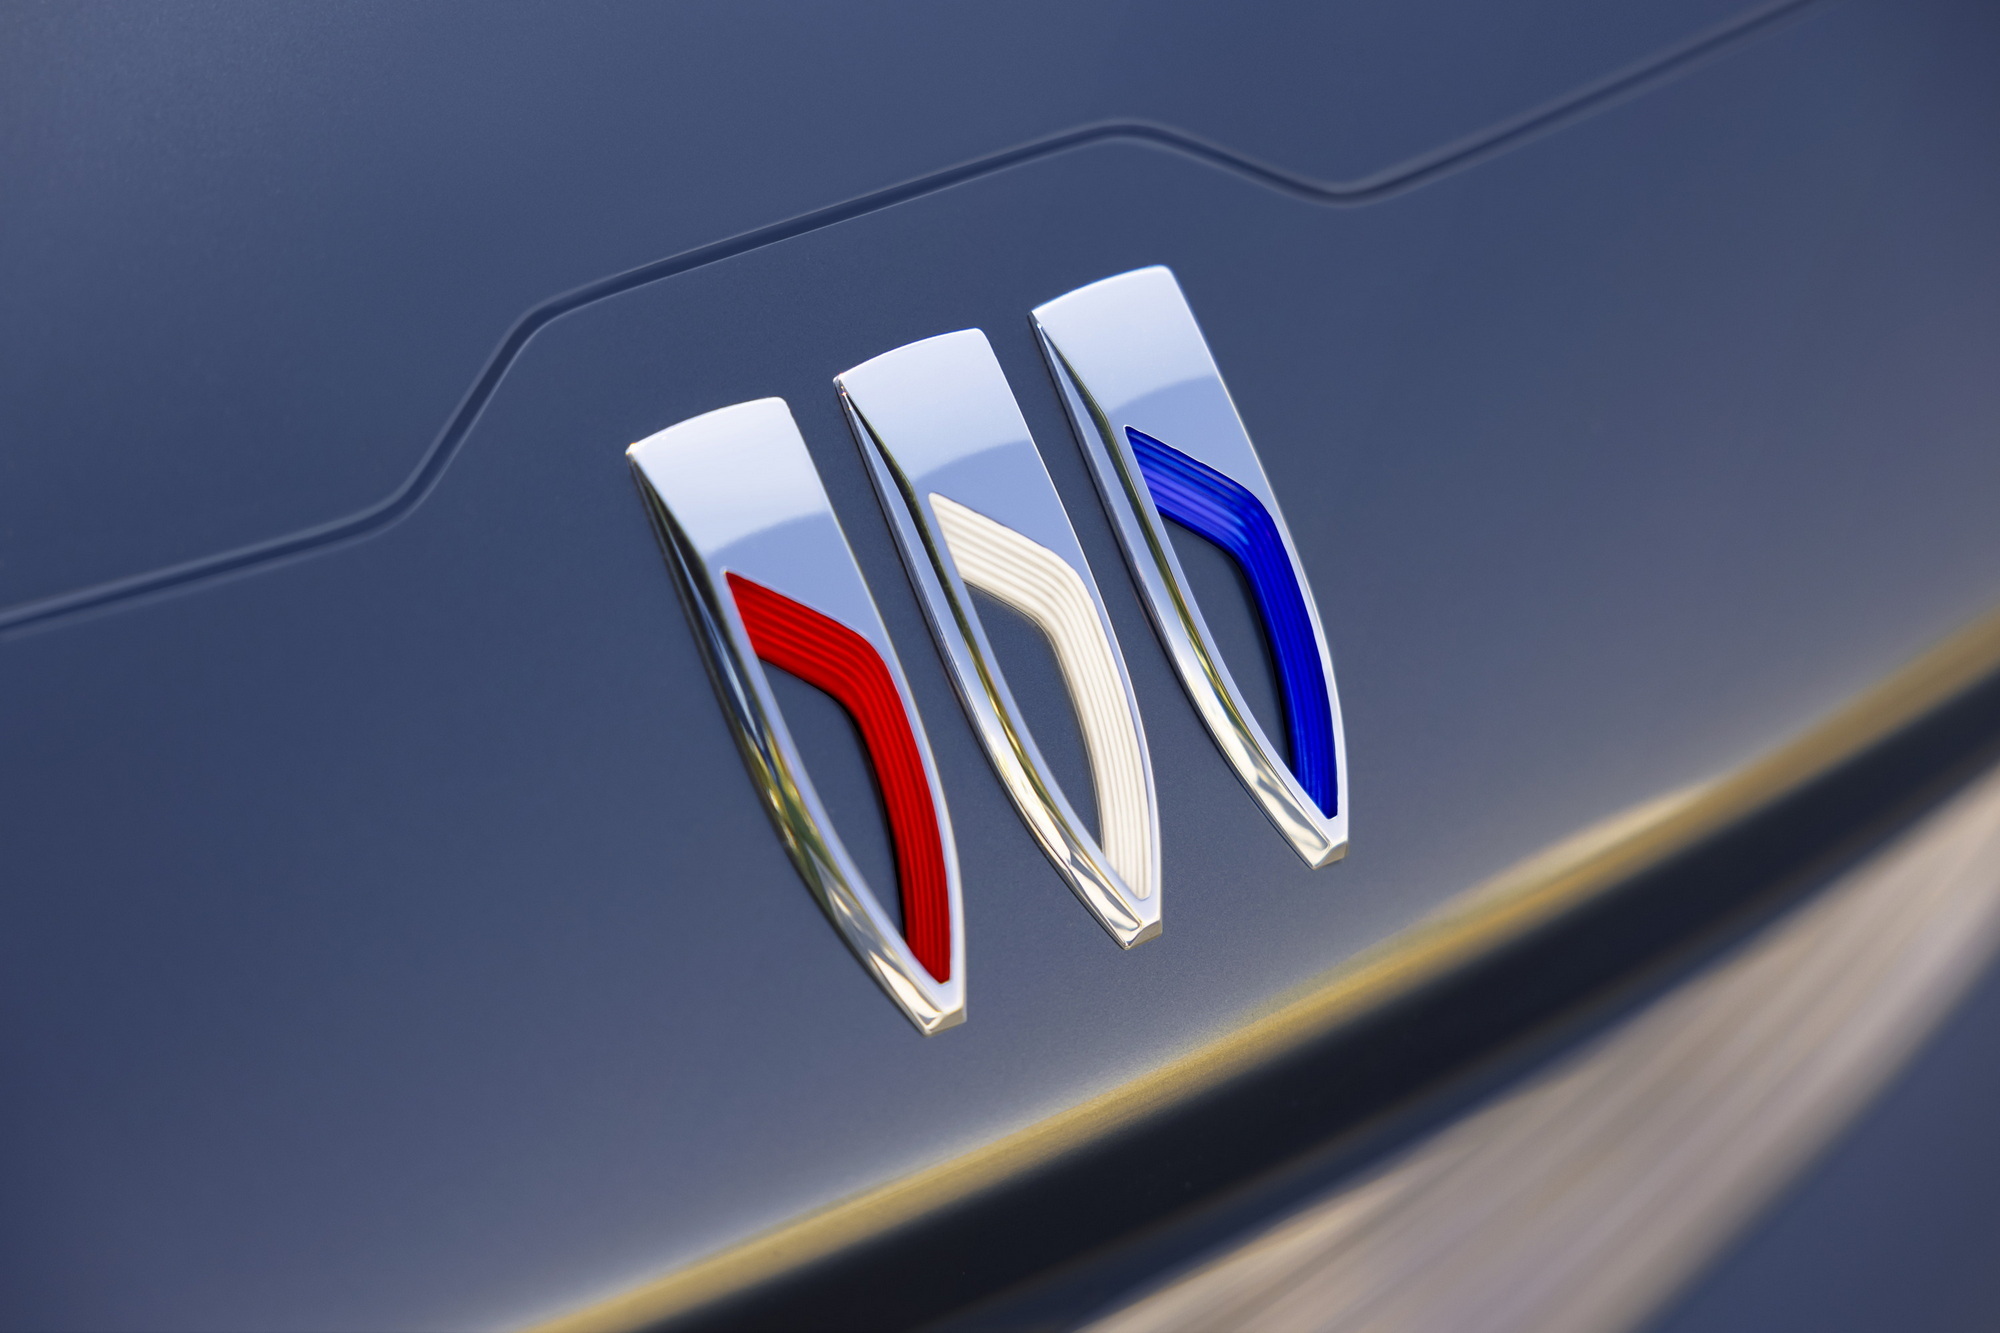 Logotipo del Peugeot. | Peugeot, Car logos, Emblems